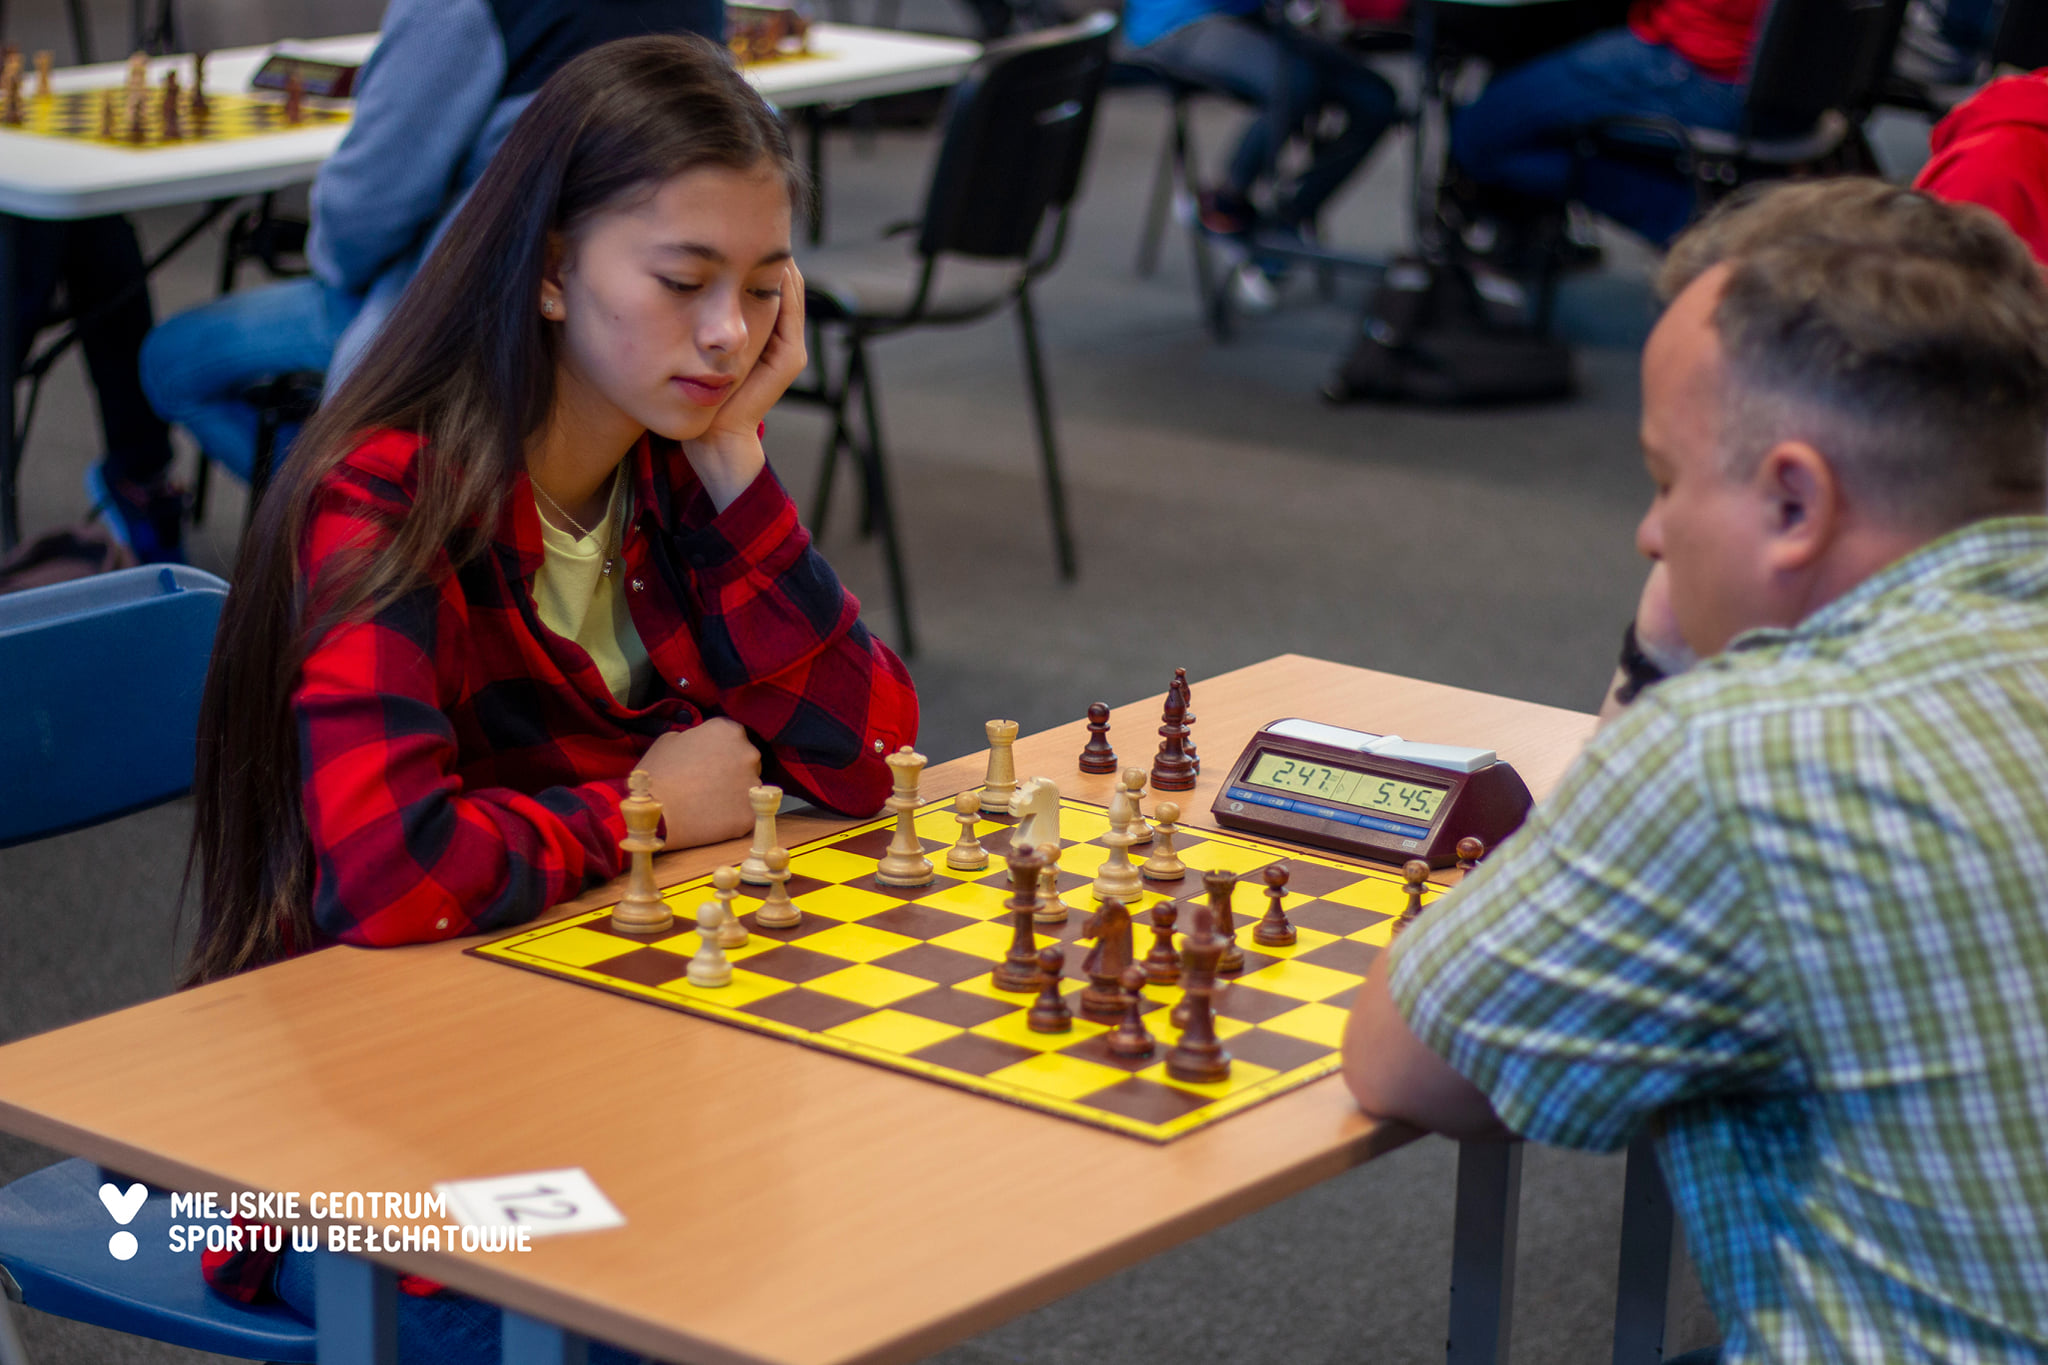 na zdjęciu znajduje się dziewczyna w czarno-czerwonej koszuli w kratę w trakcie gry w szachy na turnieju